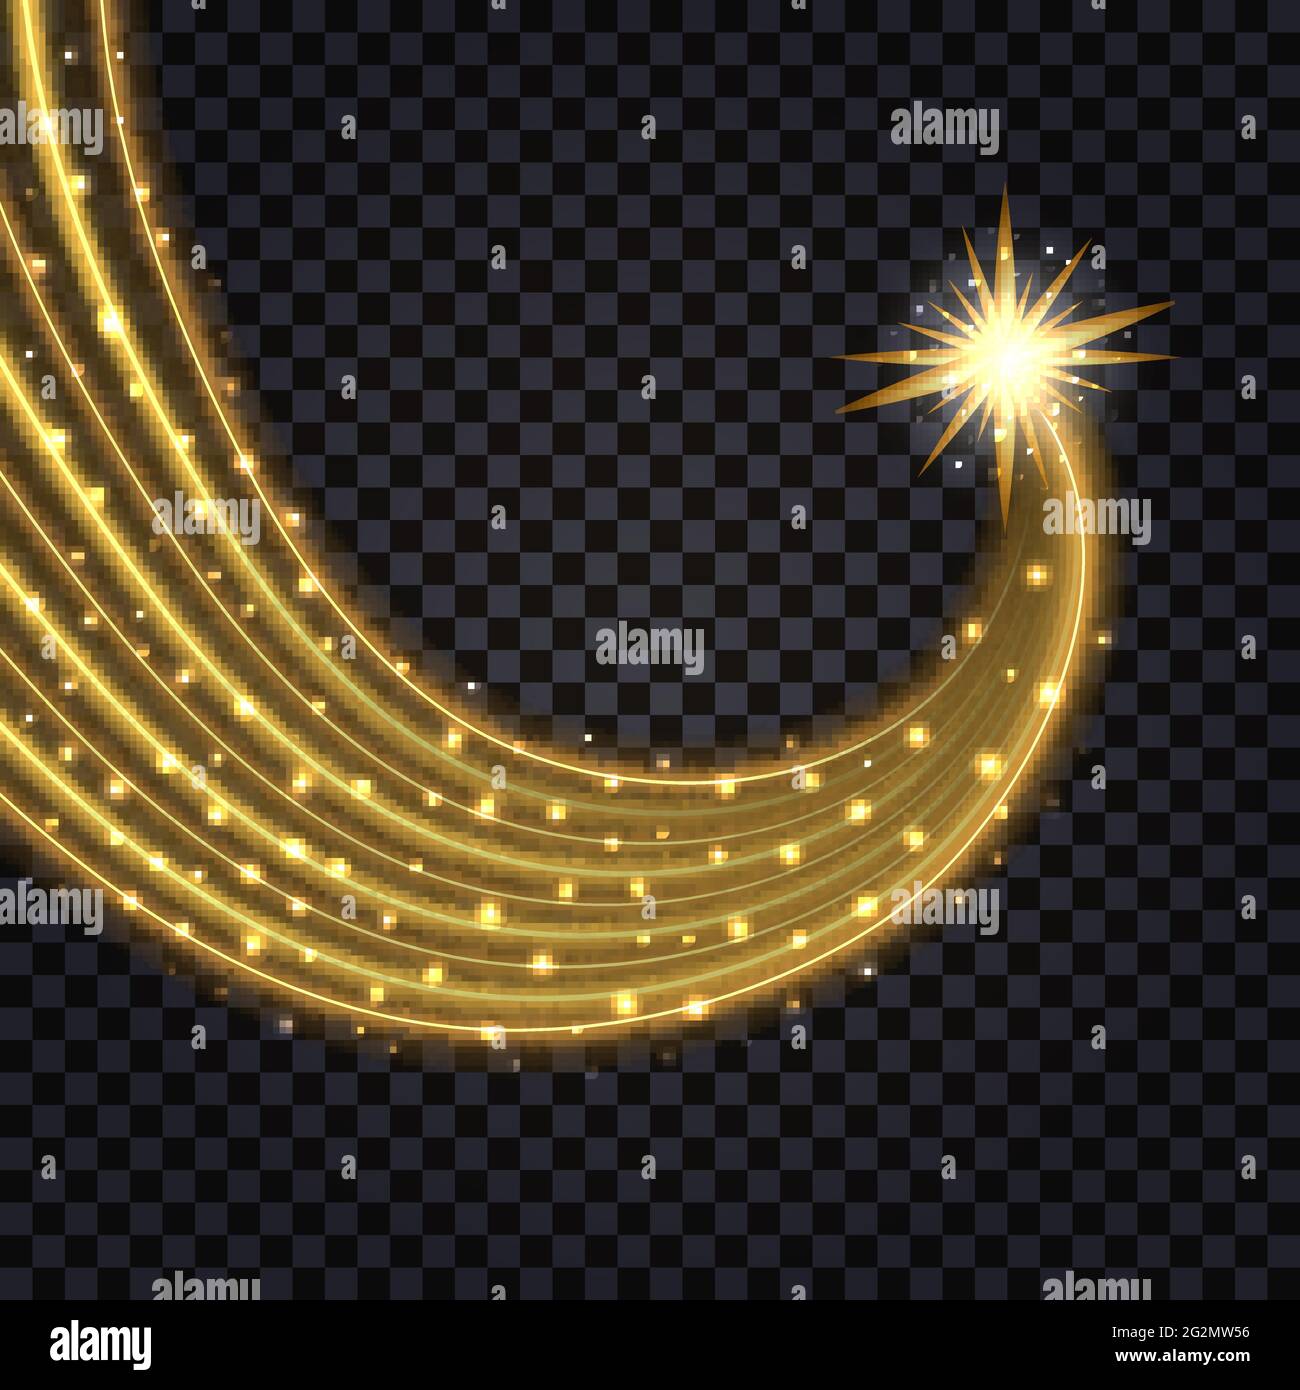 Goldene glühende Welle. Lichteffekt und Strudel-Trail mit glitzernden Funkeln. Vektorgrafik Stock Vektor